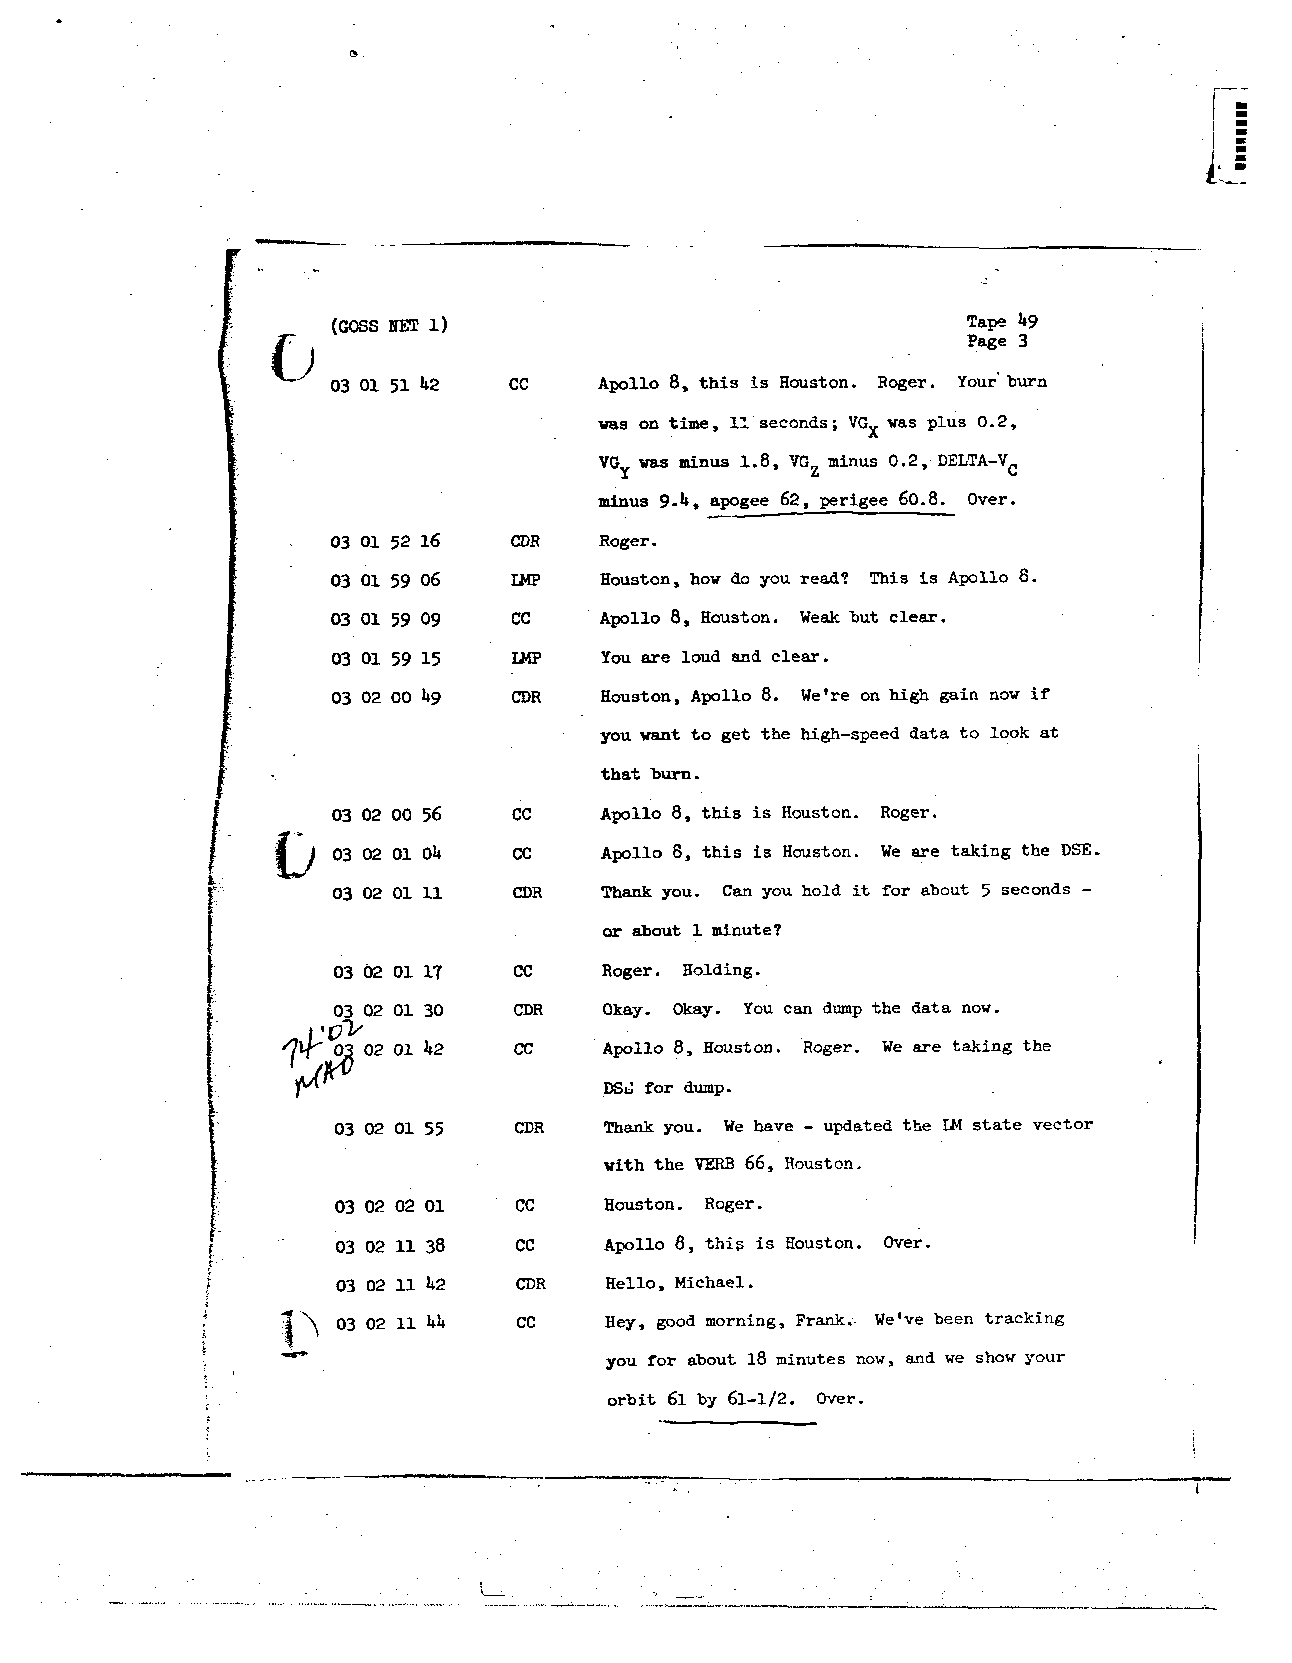 Page 391 of Apollo 8’s original transcript